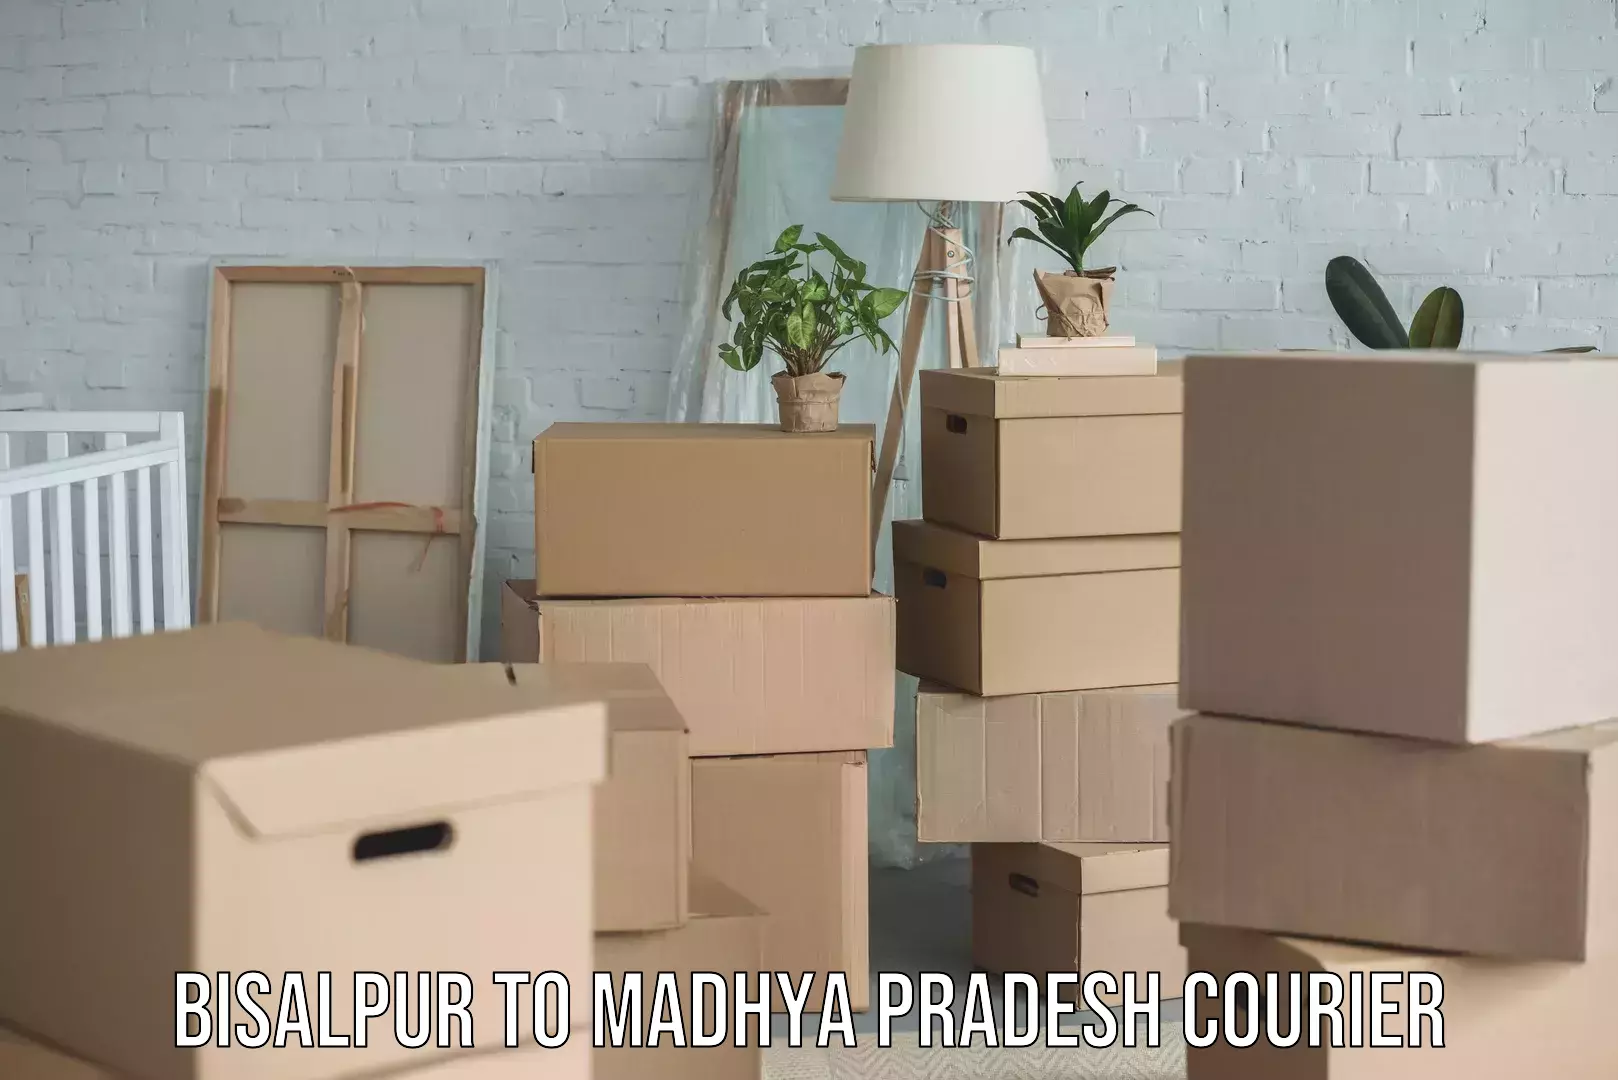 Urgent courier needs Bisalpur to Madhya Pradesh